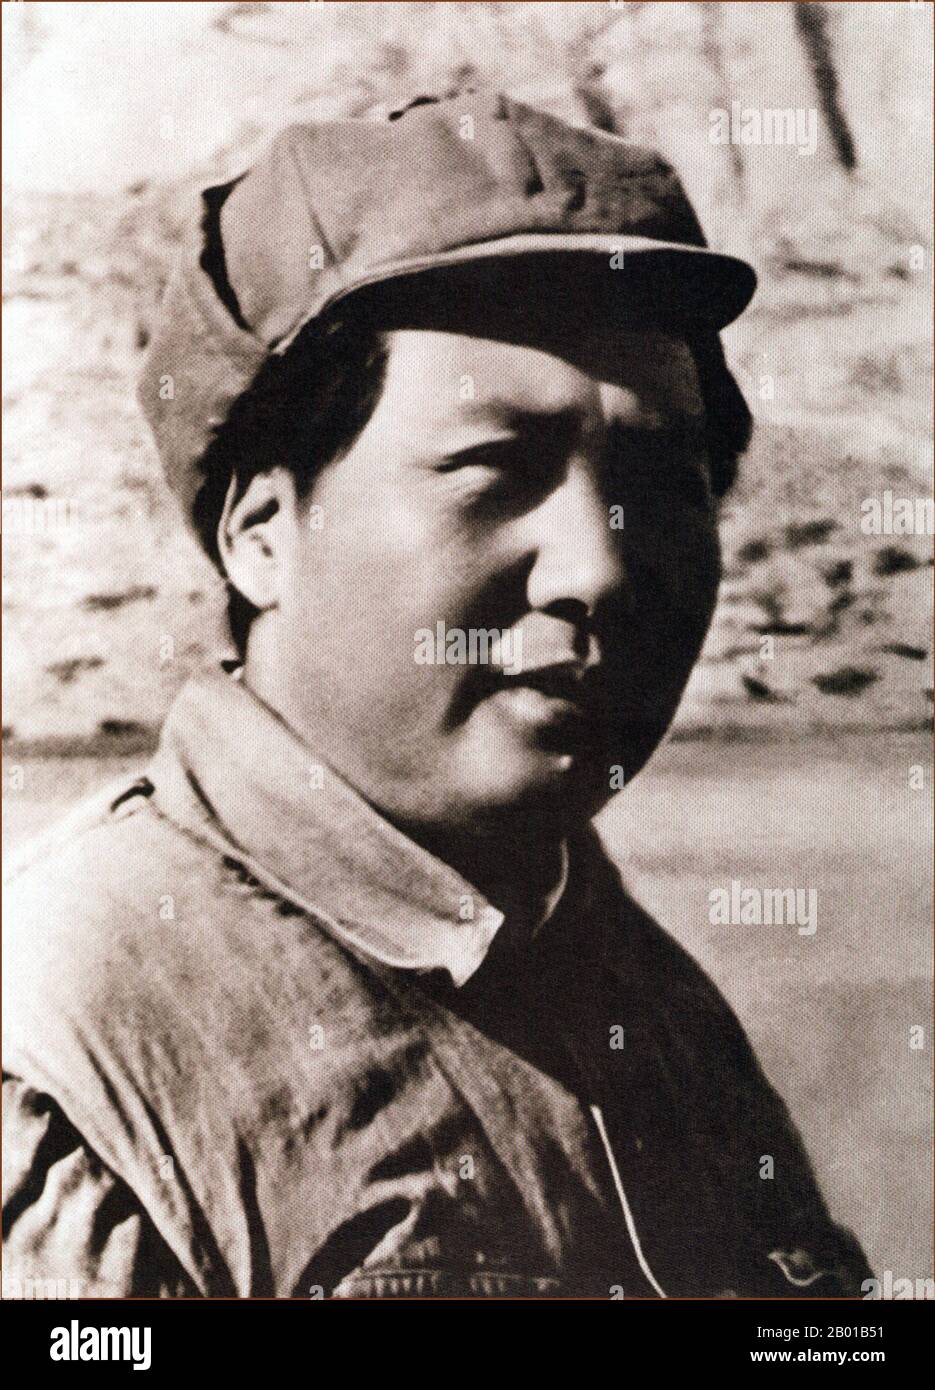 China: Mao Zedong (26. Dezember 1893 - 9. September 1976) Vorsitzender der Volksrepublik China, c. 1935-1940. Mao Zedong, auch als Mao Tse-tung transliteriert, war ein chinesischer kommunistischer Revolutionär, Guerilla-Kriegsstratege, Autor, politischer Theoretiker und Führer der chinesischen Revolution. Allgemein als Vorsitzender Mao bezeichnet, war er seit seiner Gründung im Jahr 1949 der Architekt der Volksrepublik China (PRC) und hatte bis zu seinem Tod im Jahr 1976 die autoritäre Kontrolle über die Nation. Sein theoretischer Beitrag zum Marxismus-Leninismus wird kollektiv als Maoismus bezeichnet. Stockfoto